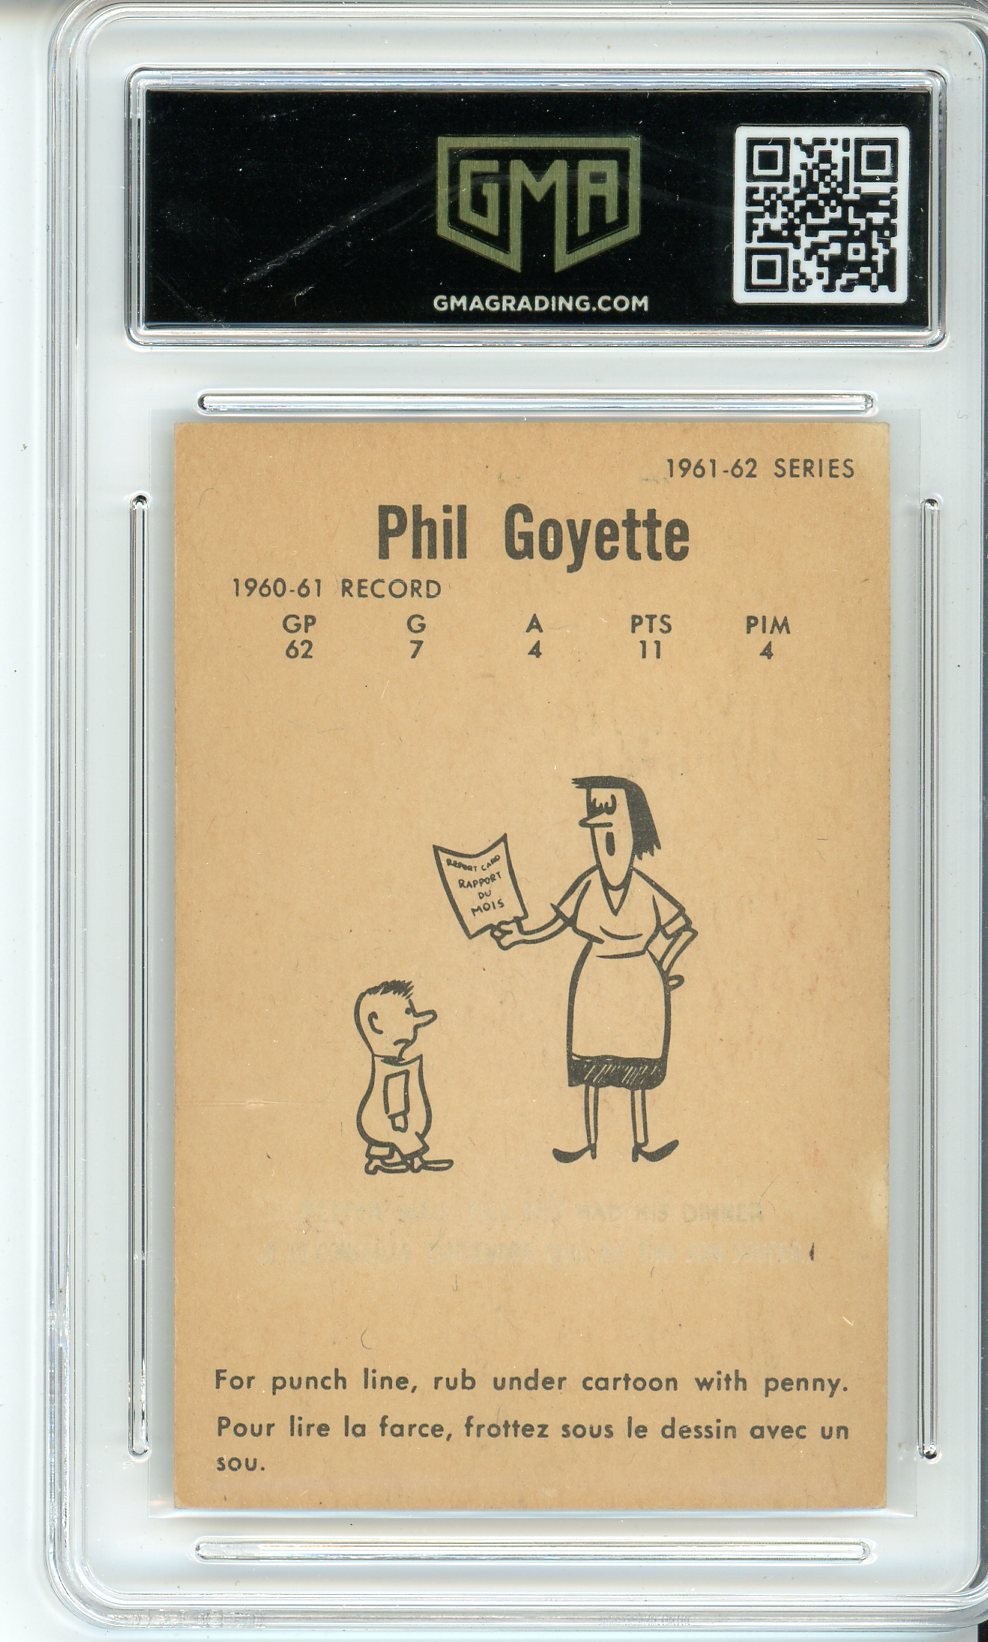 1961 Parkhurst Phil Goyette #46 Graded Card GMA 3.5